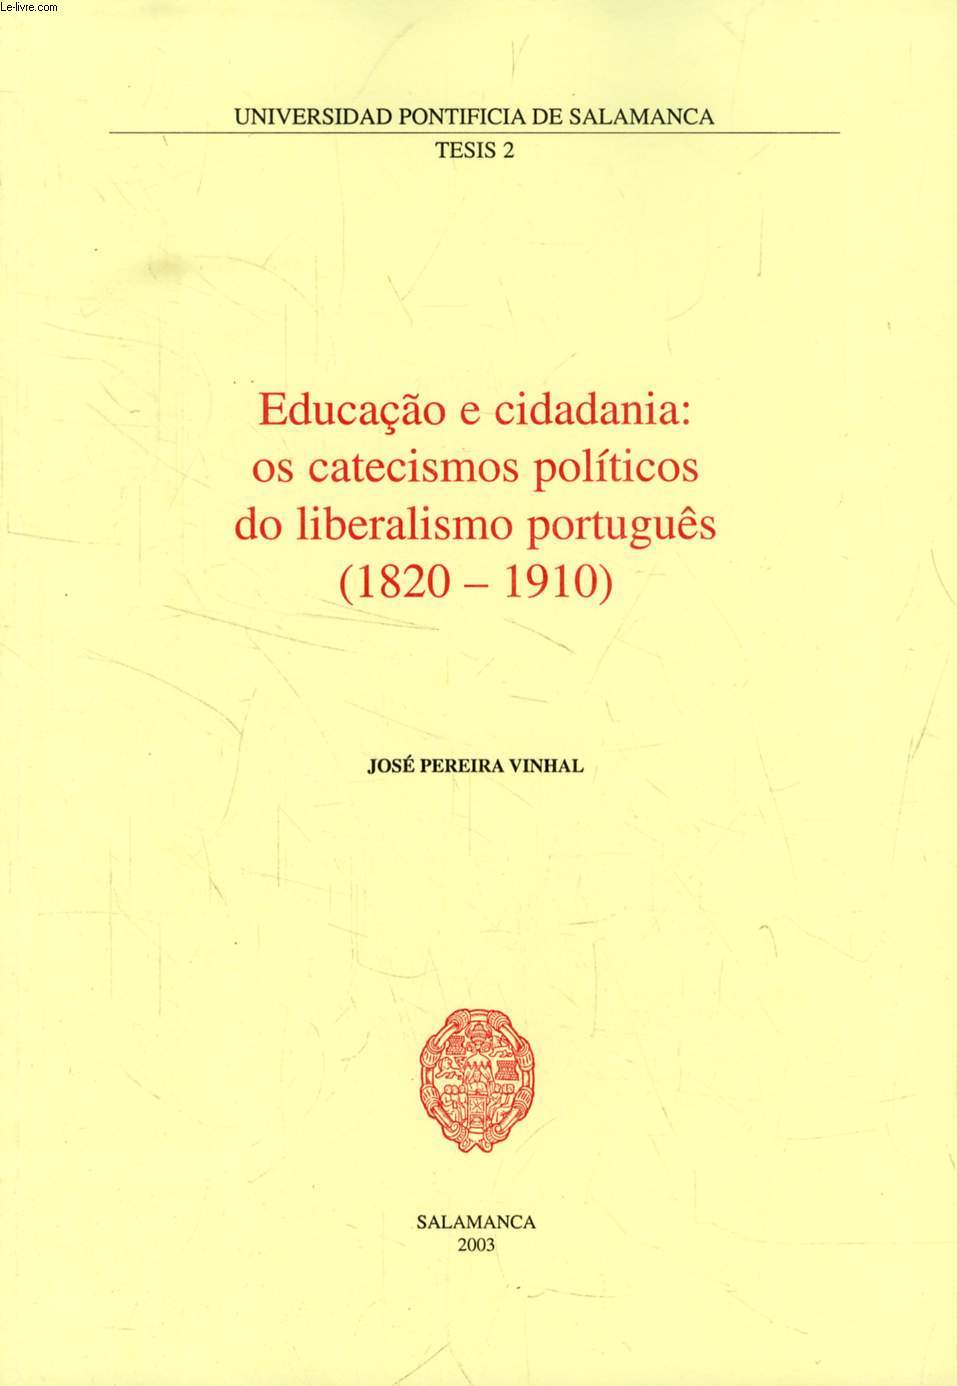 EDUCAO E CIDADANIA: OS CATECISMOS POLITICOS DO LIBERALISMO PORTUGUS (1820-1910) (EXTRACTO DA TESE)